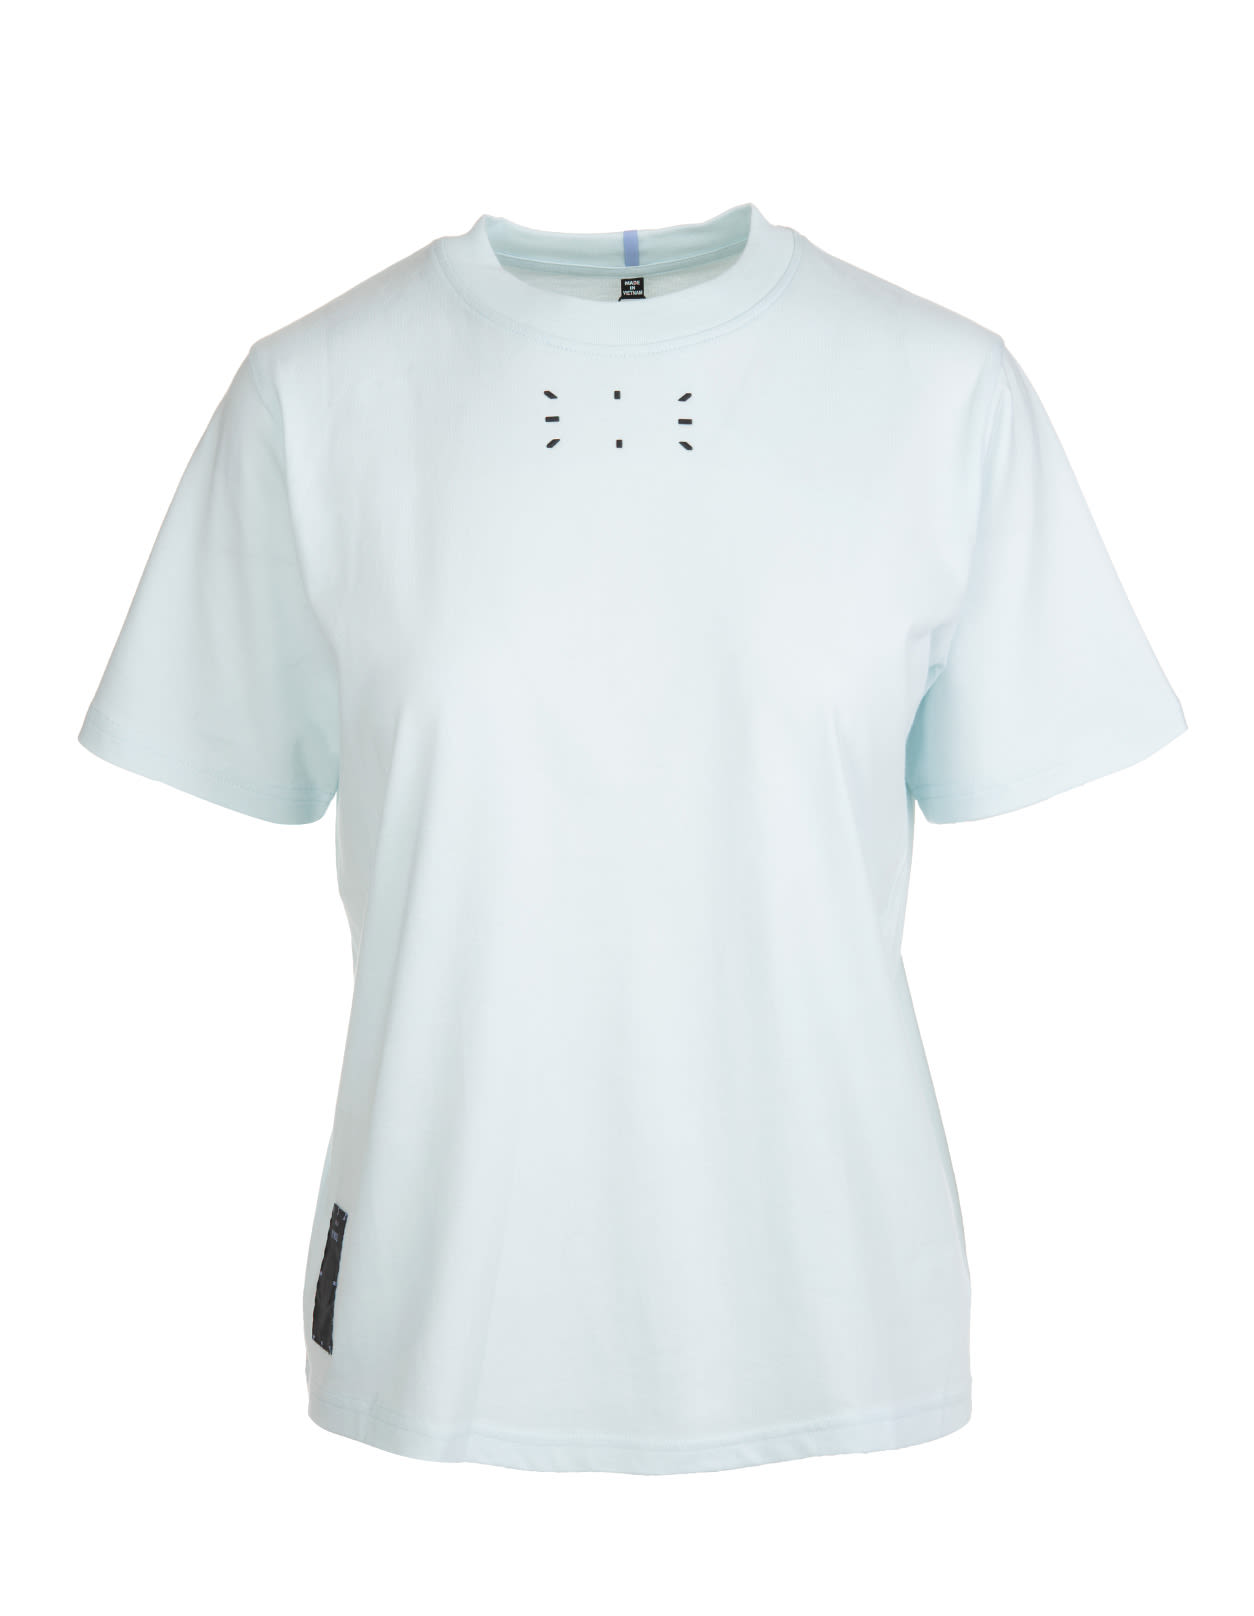 McQ Alexander McQueen Woman Light Mint T-shirt With Logo